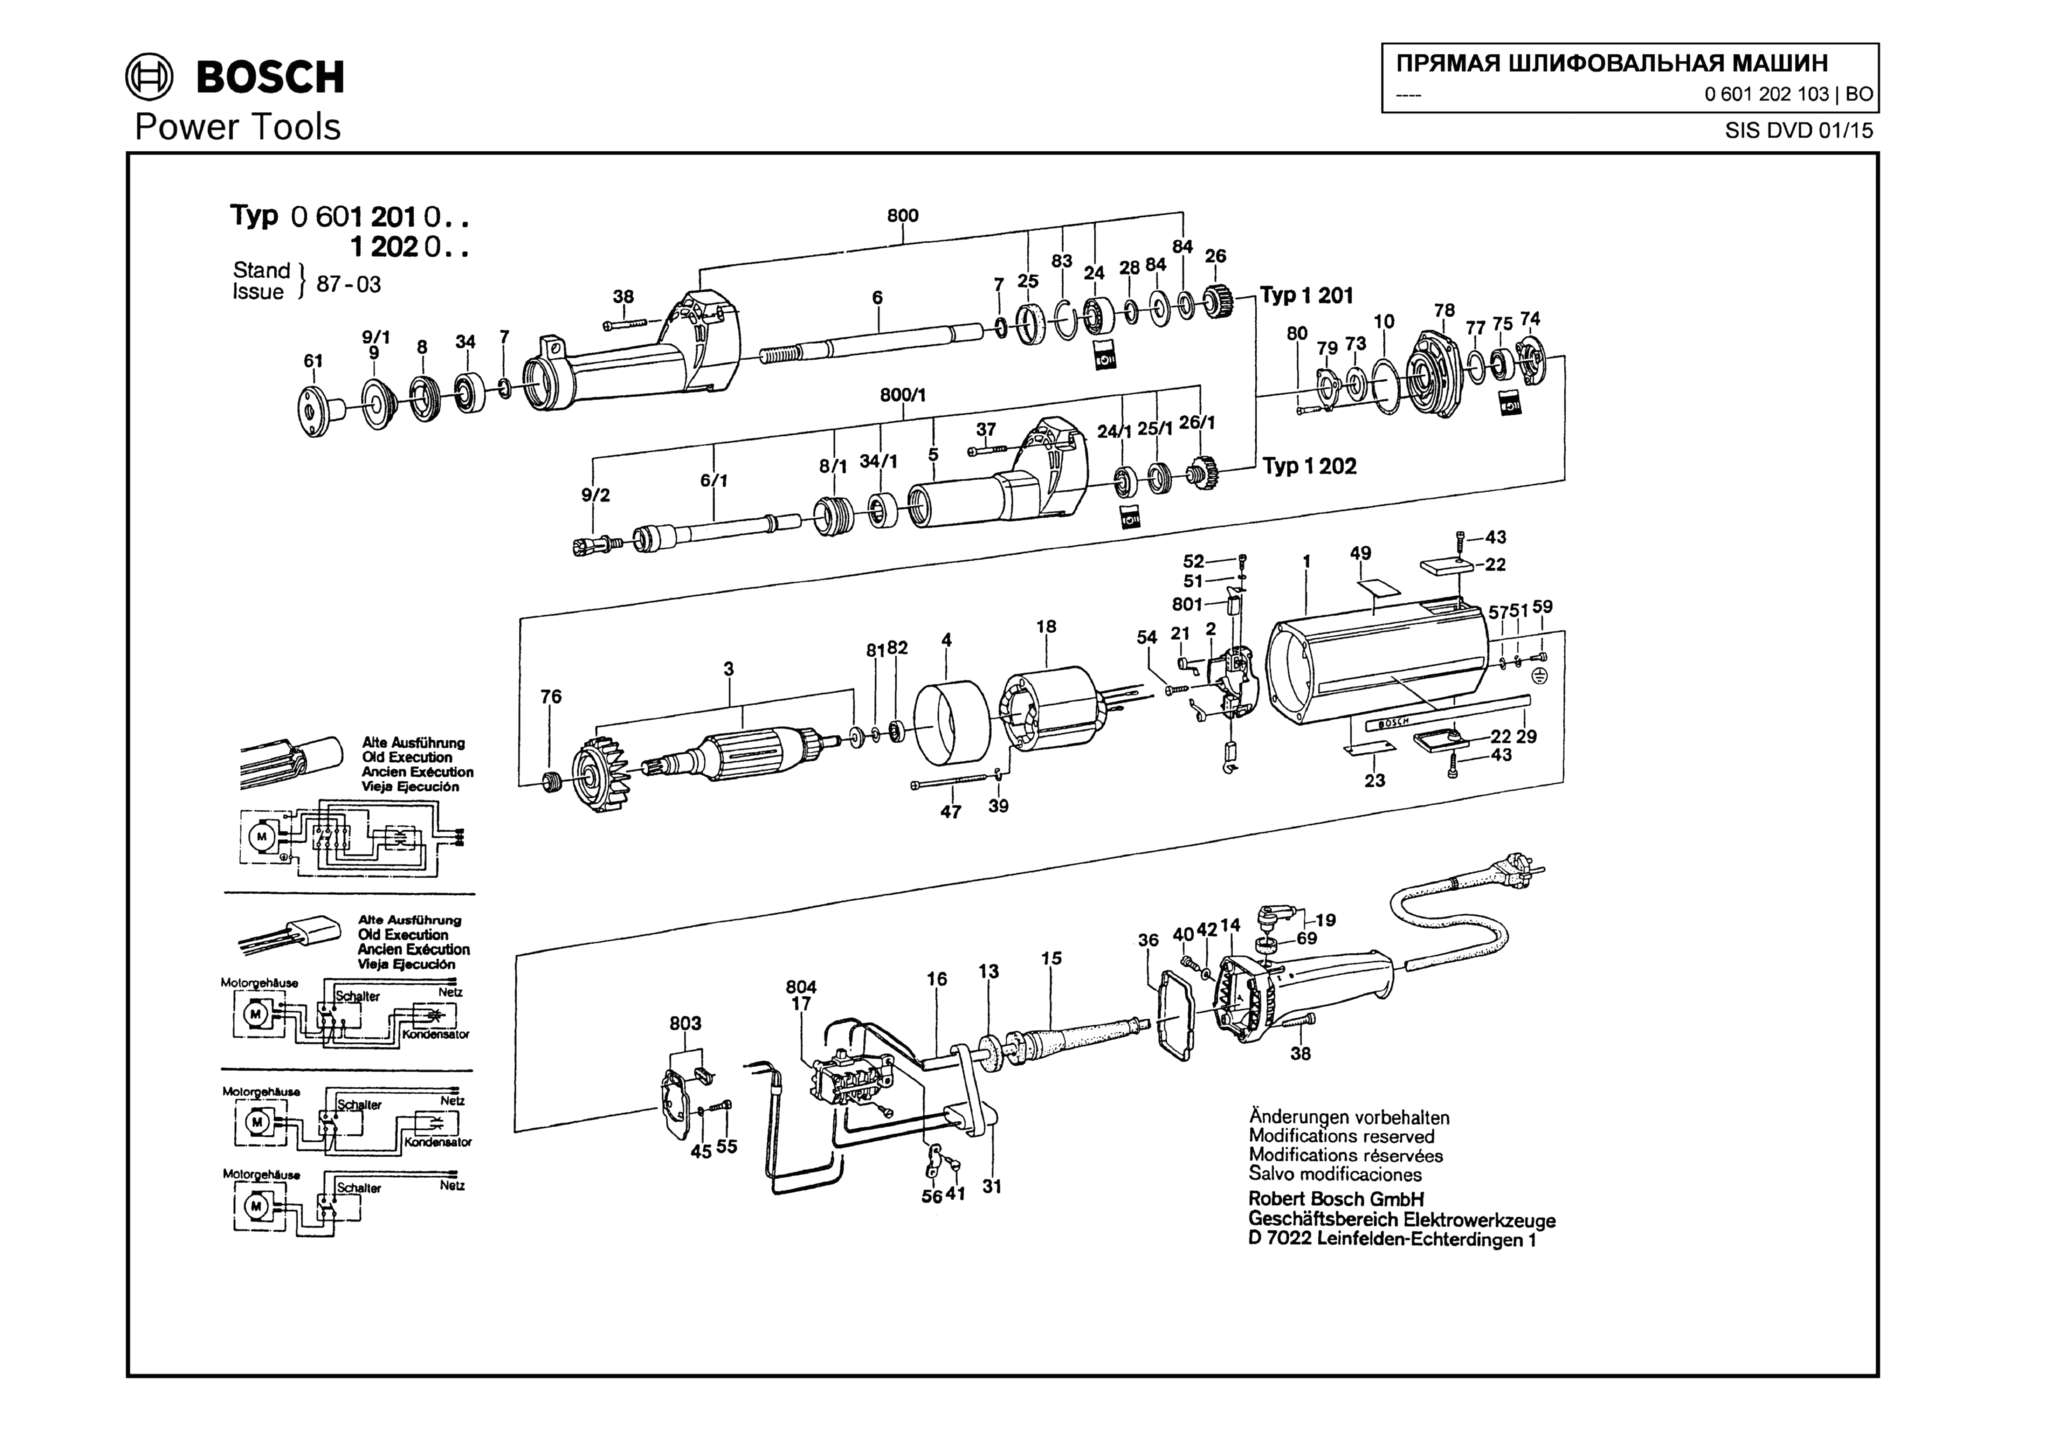 Запчасти, схема и деталировка Bosch (ТИП 0601202103)